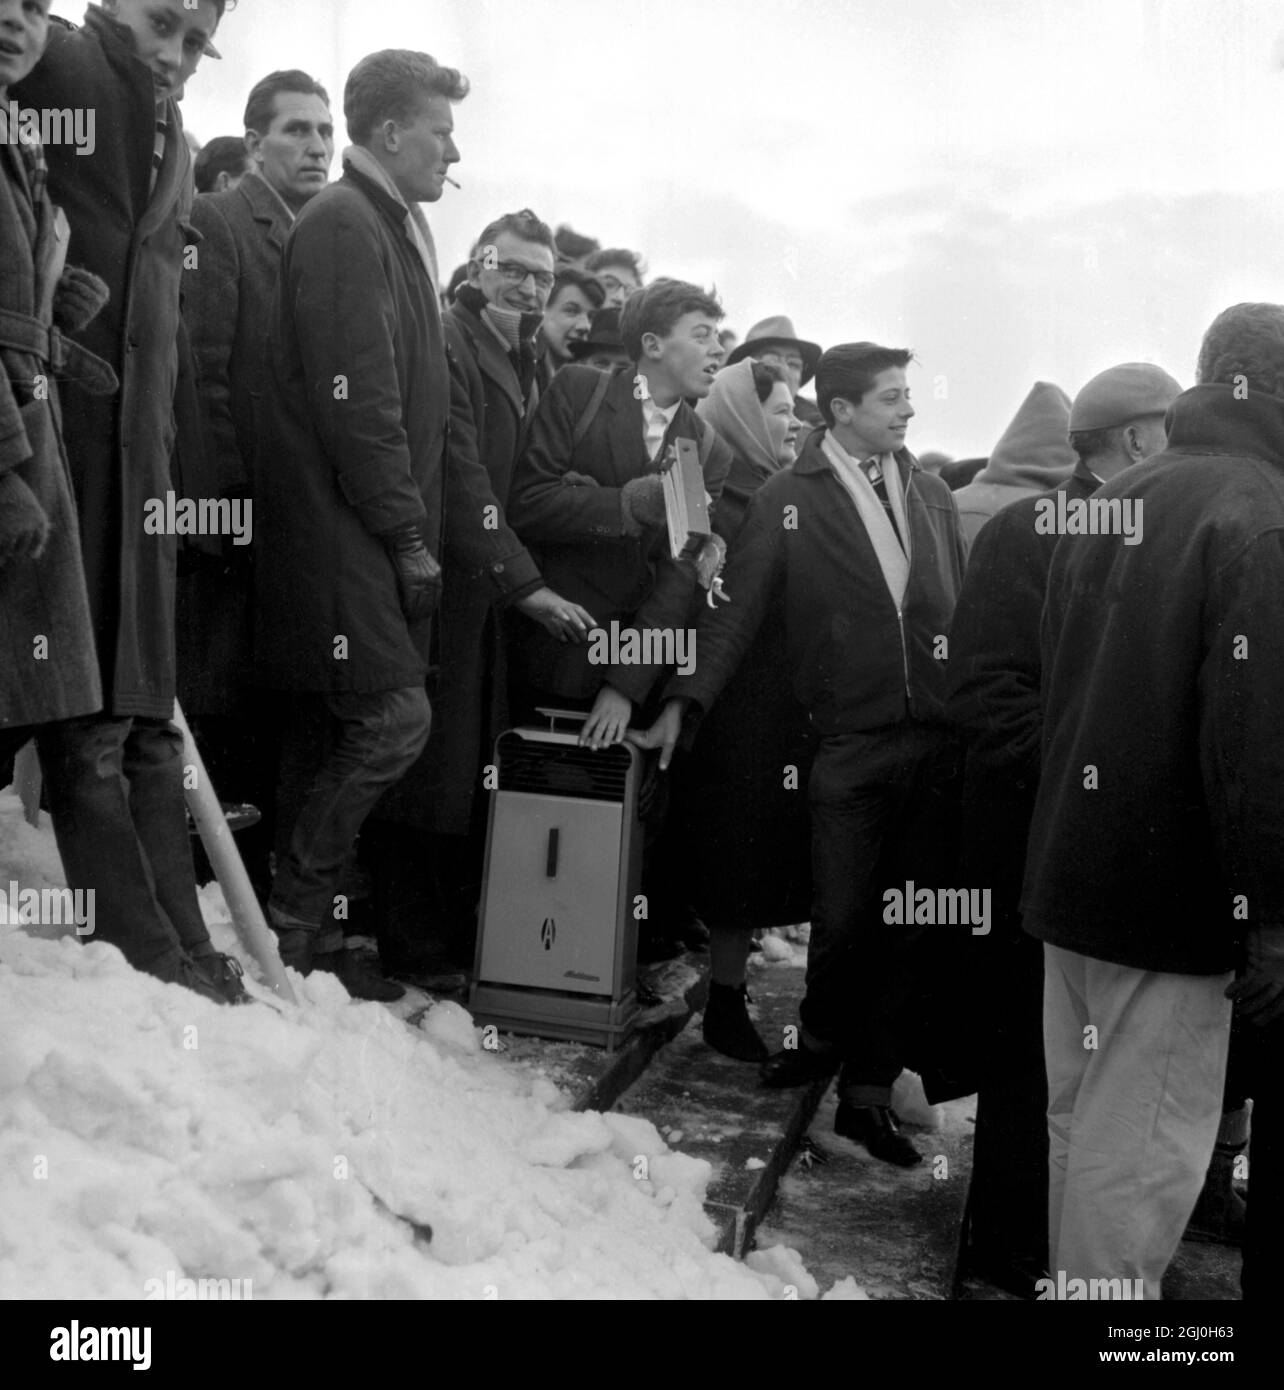 Brighton, Inghilterra: Questi tifosi di Brighton hanno preso un riscaldatore dell'olio per caldarsi tra la neve mentre guardavano il Palazzo di Cristallo di Brighton V. Brighton ha perso 1 - 2. 12 gennaio 1963 Foto Stock